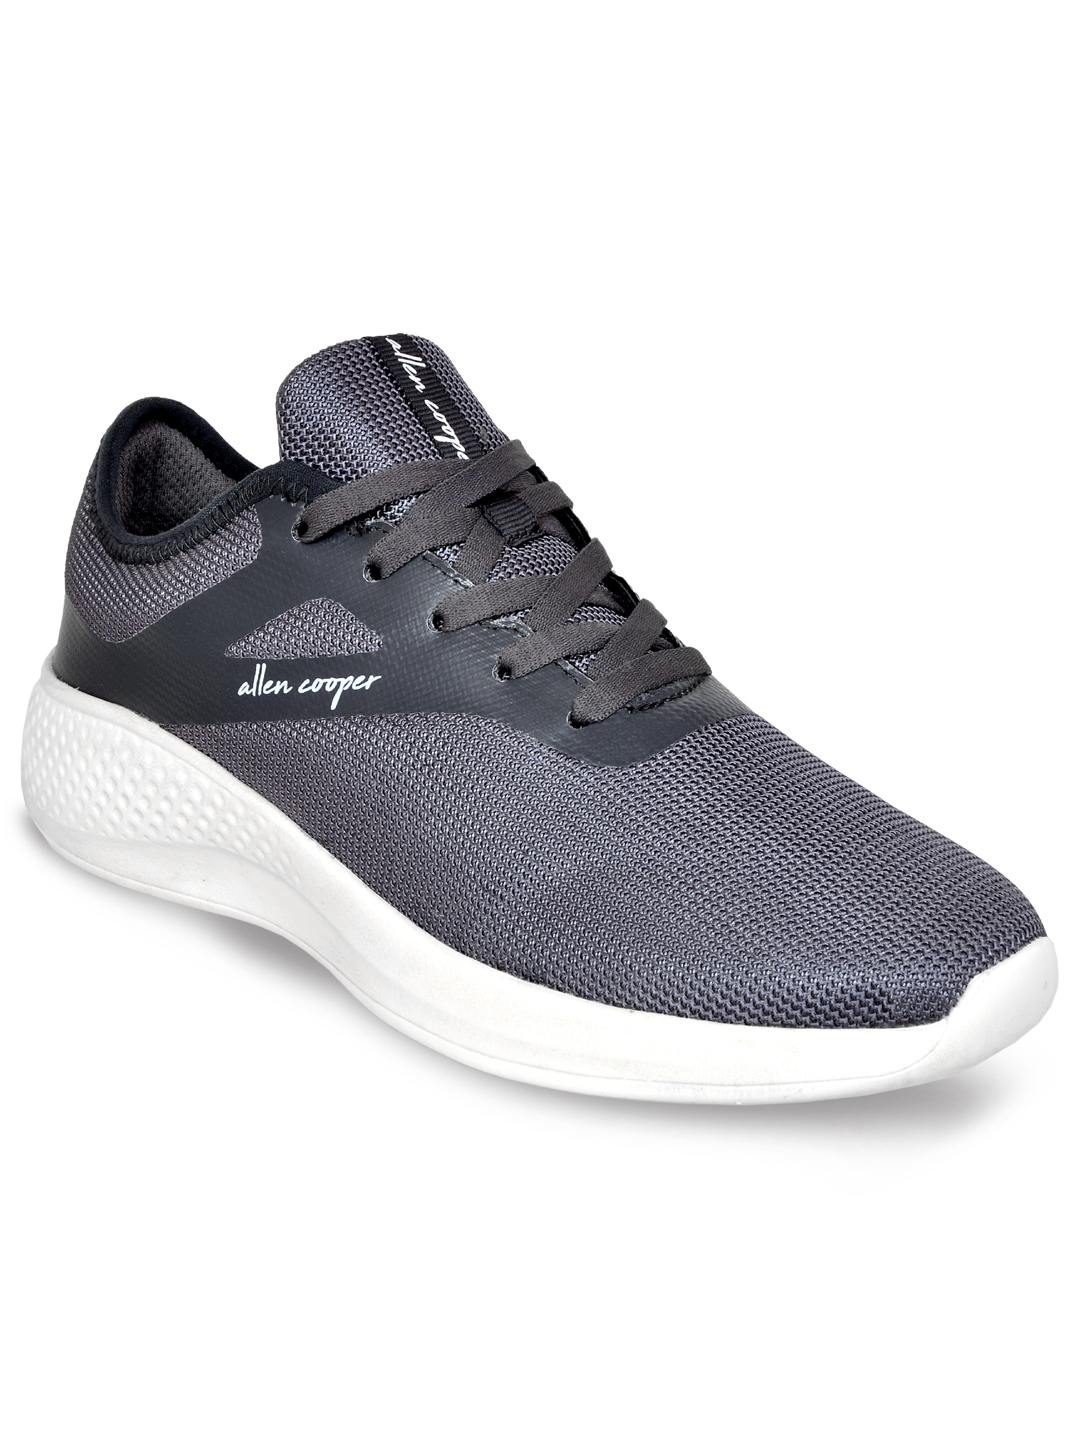 Allen Cooper | Allen Cooper Grey Sports Shoes For Men 